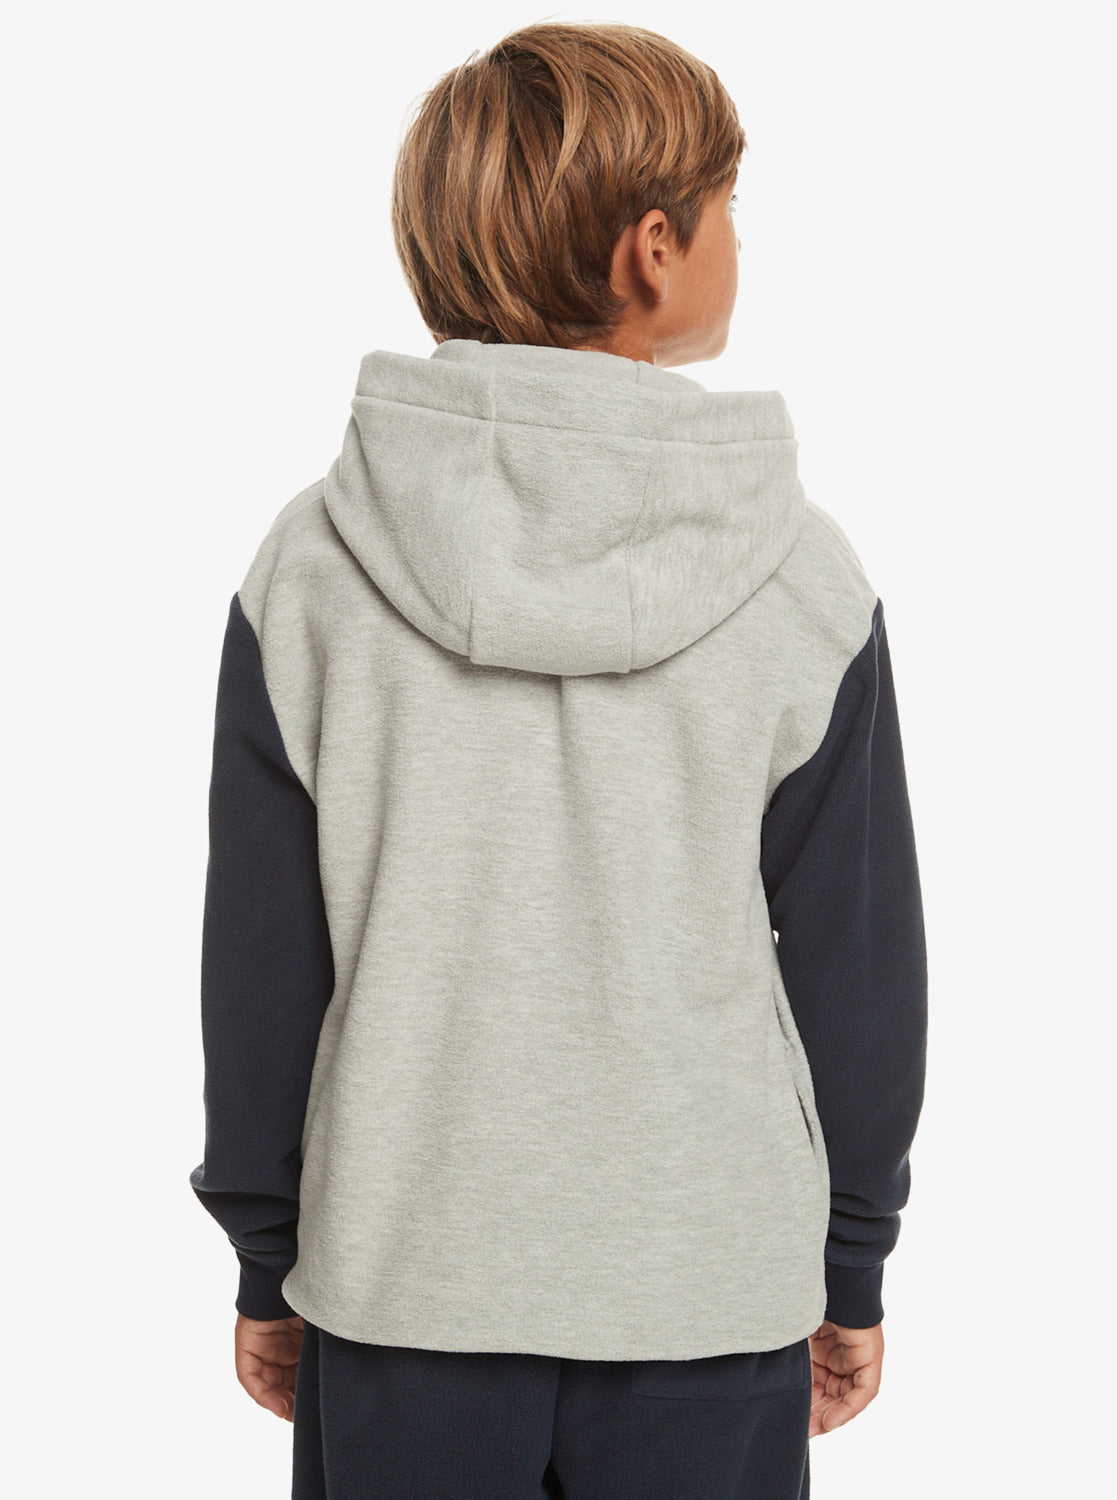 Quiksilver Essentials Boys Hooded Fleece in Light Grey Heather